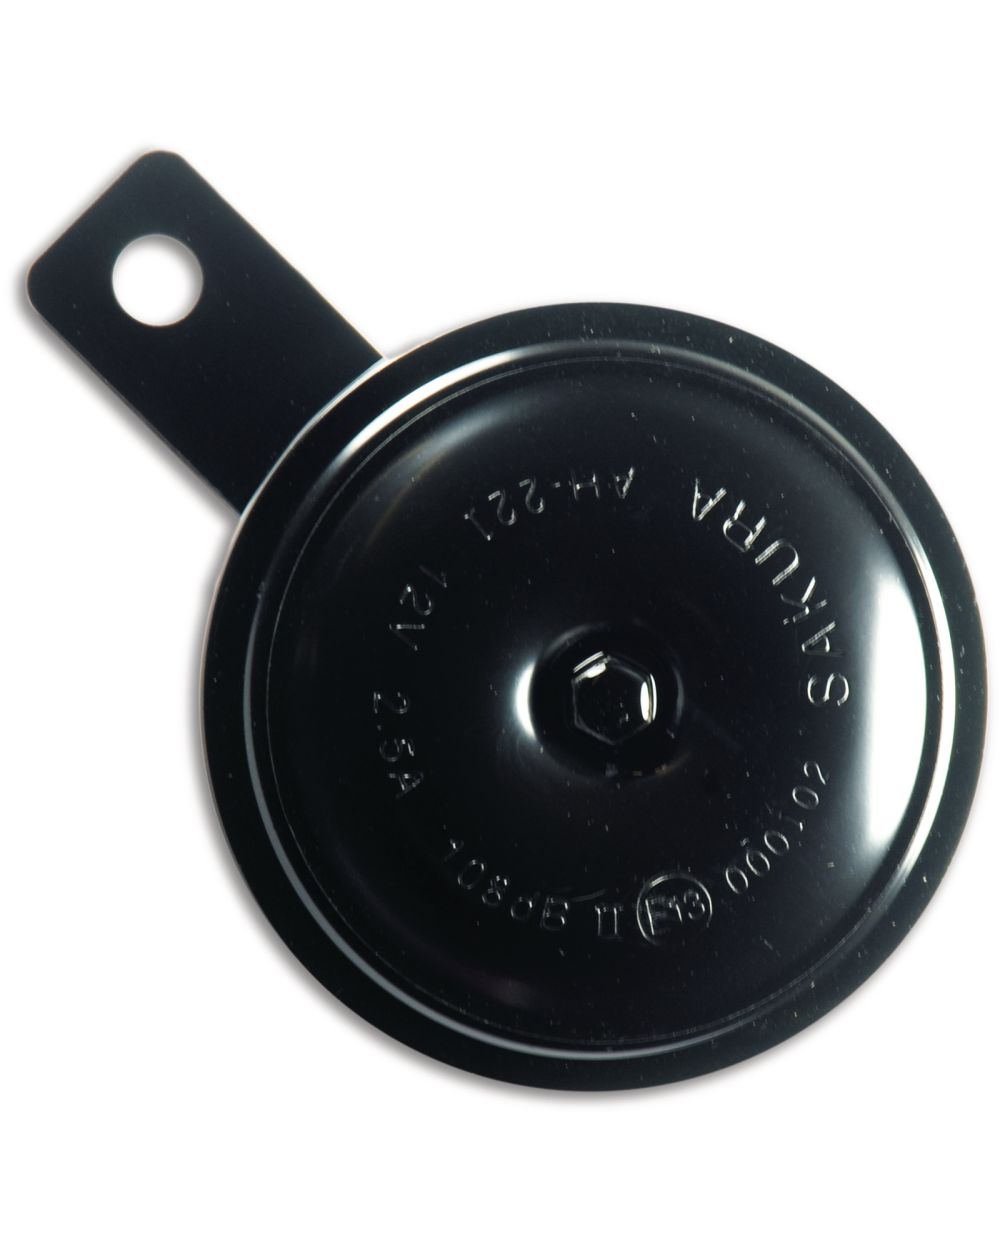 Hupe 12V e-geprüft, 108dB, schwarz, Durchmesser ca. 80mm, mit